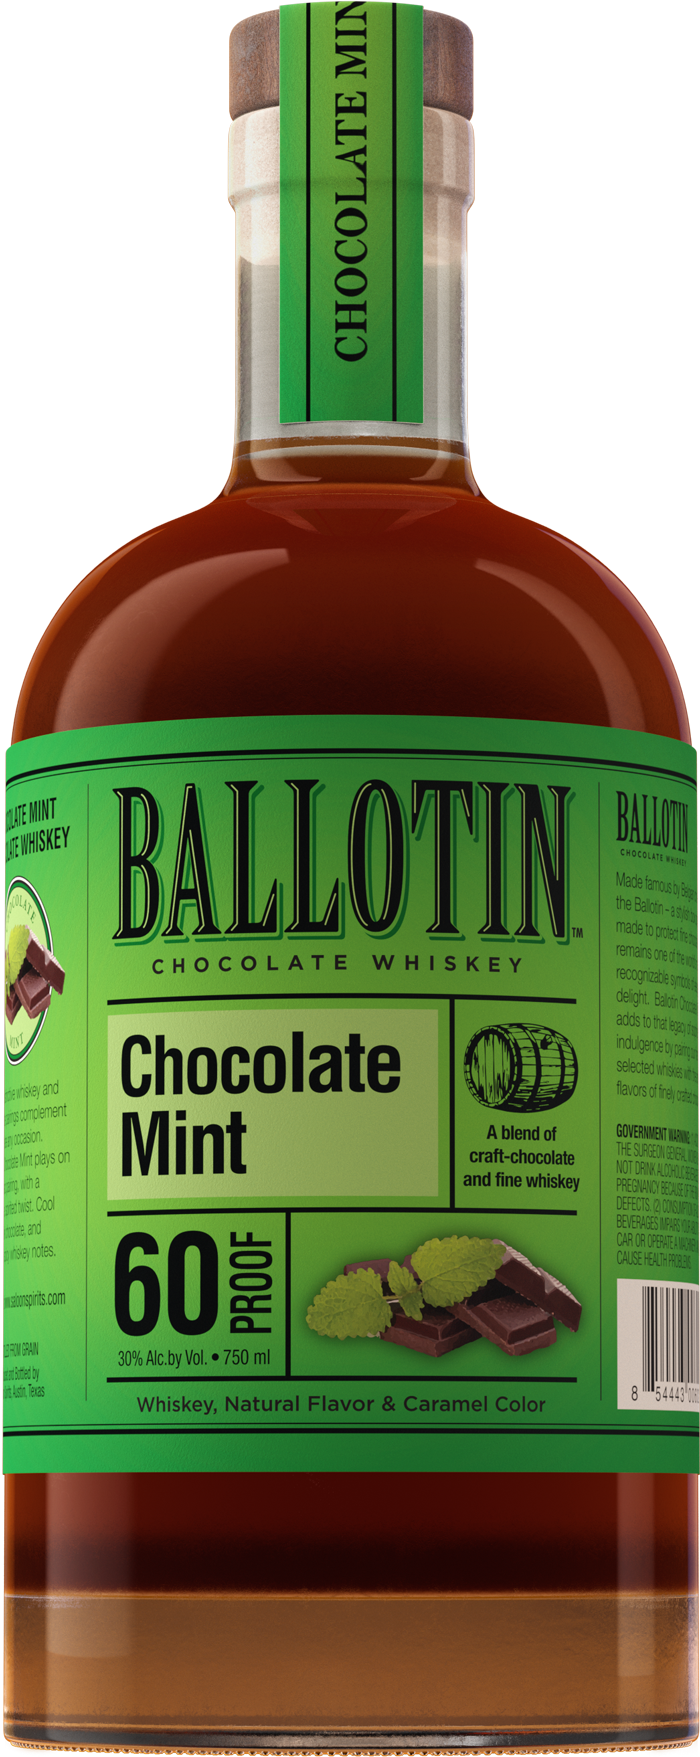 Ballotin Chocolate Mint Whiskey – Ballotin Whiskey